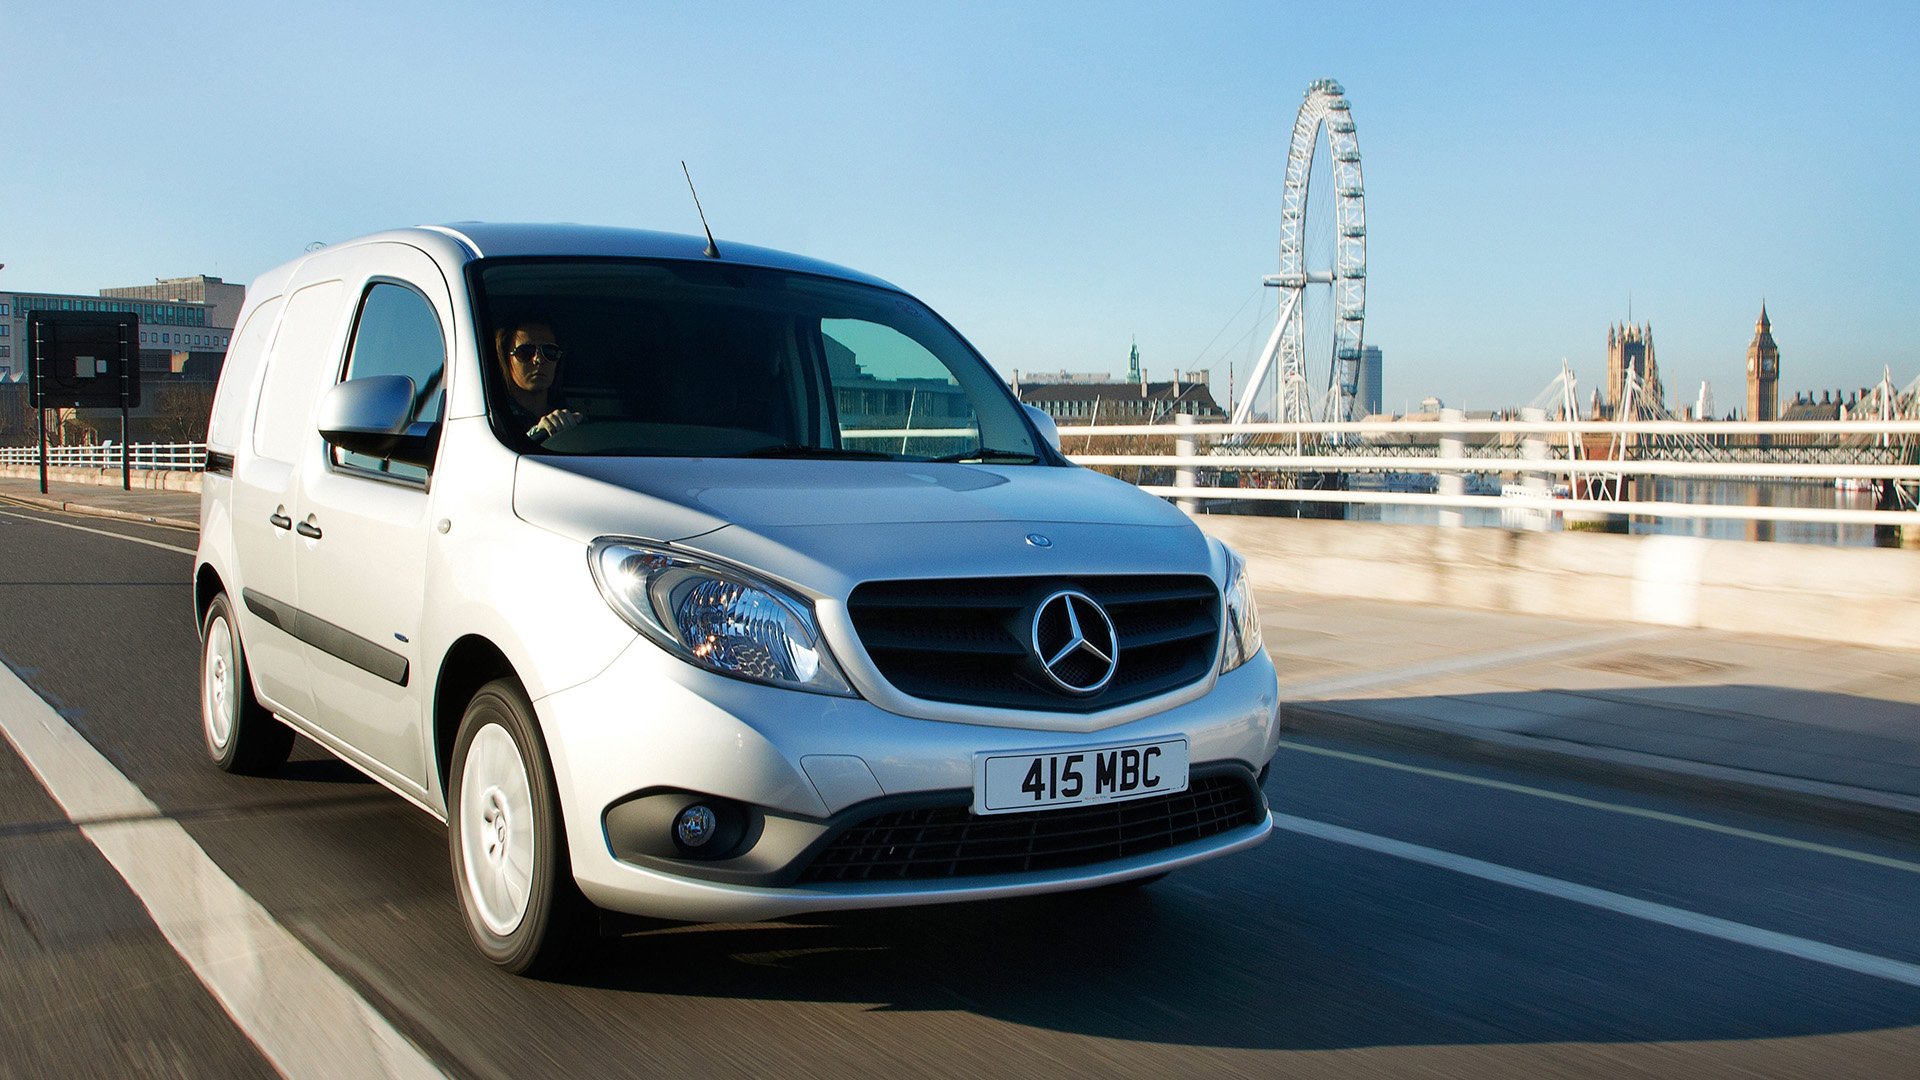 Used Mercedes-Benz Vans for sale | AutoTrader Vans